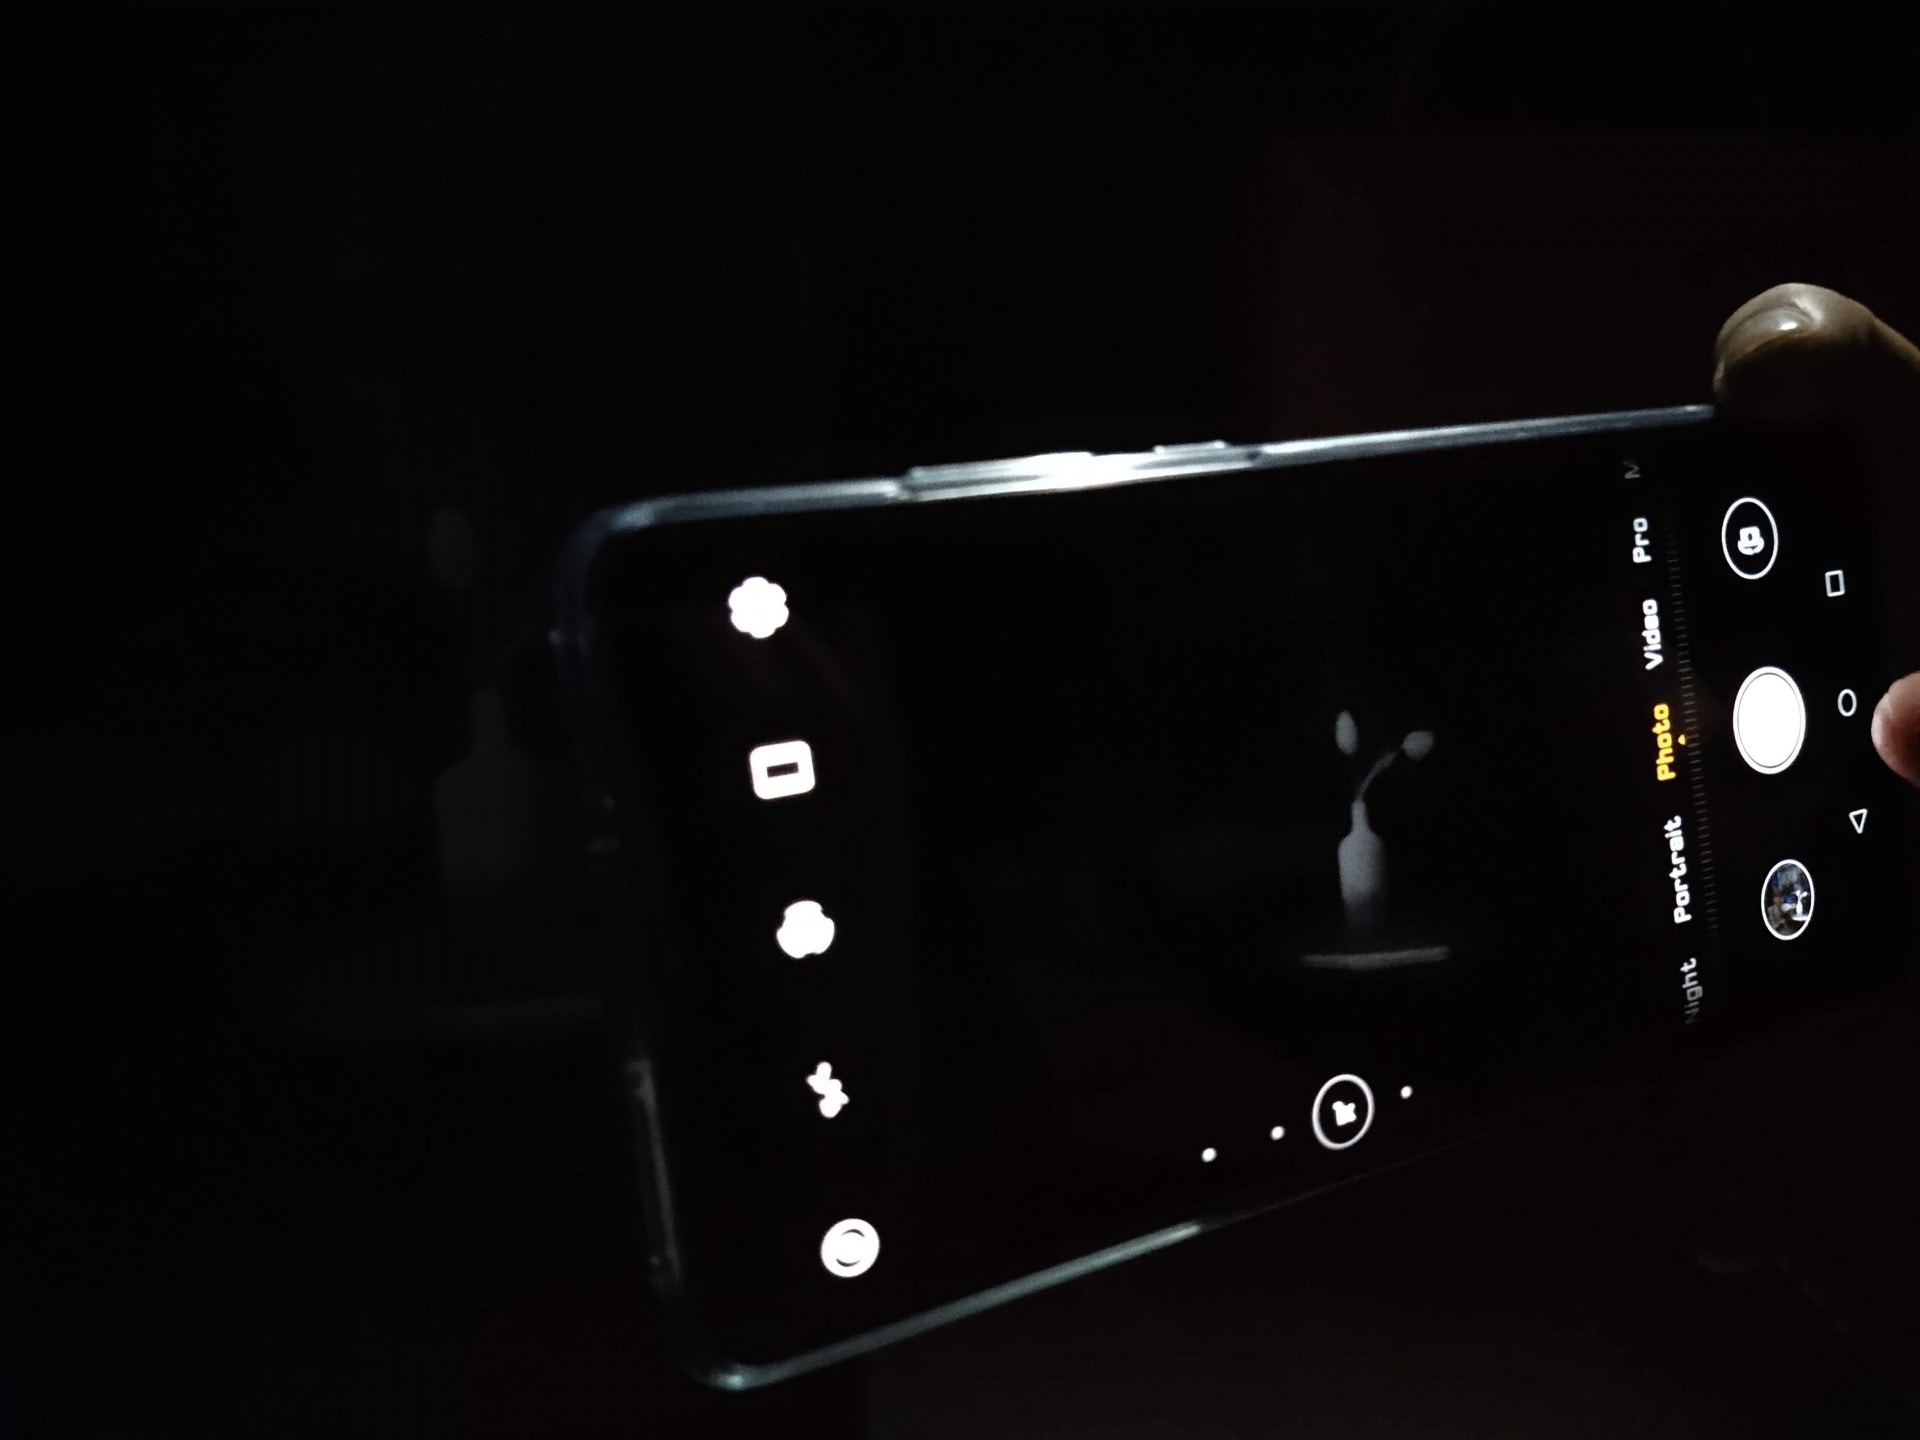 Huawei P30 Pro 夜景試拍 超高iso 夜景模式各有千秋